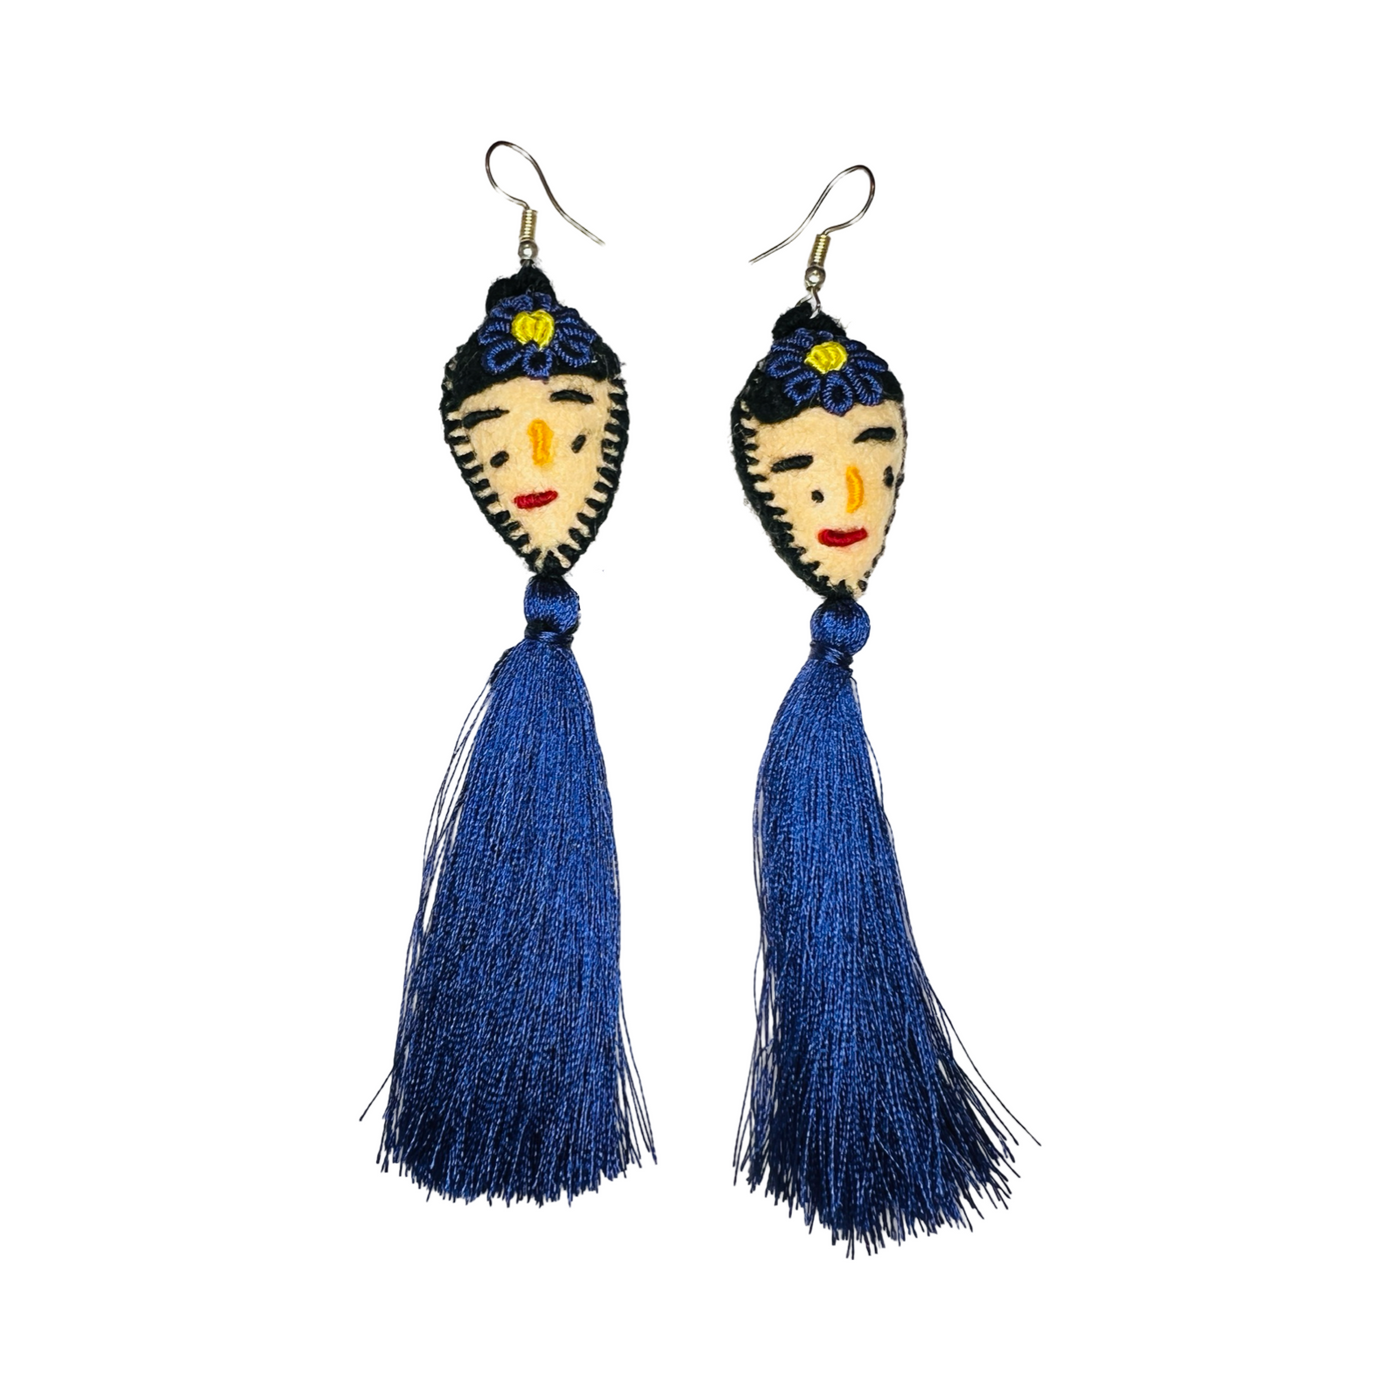 Blue set of felt Frida Kahlo tassle earrings.